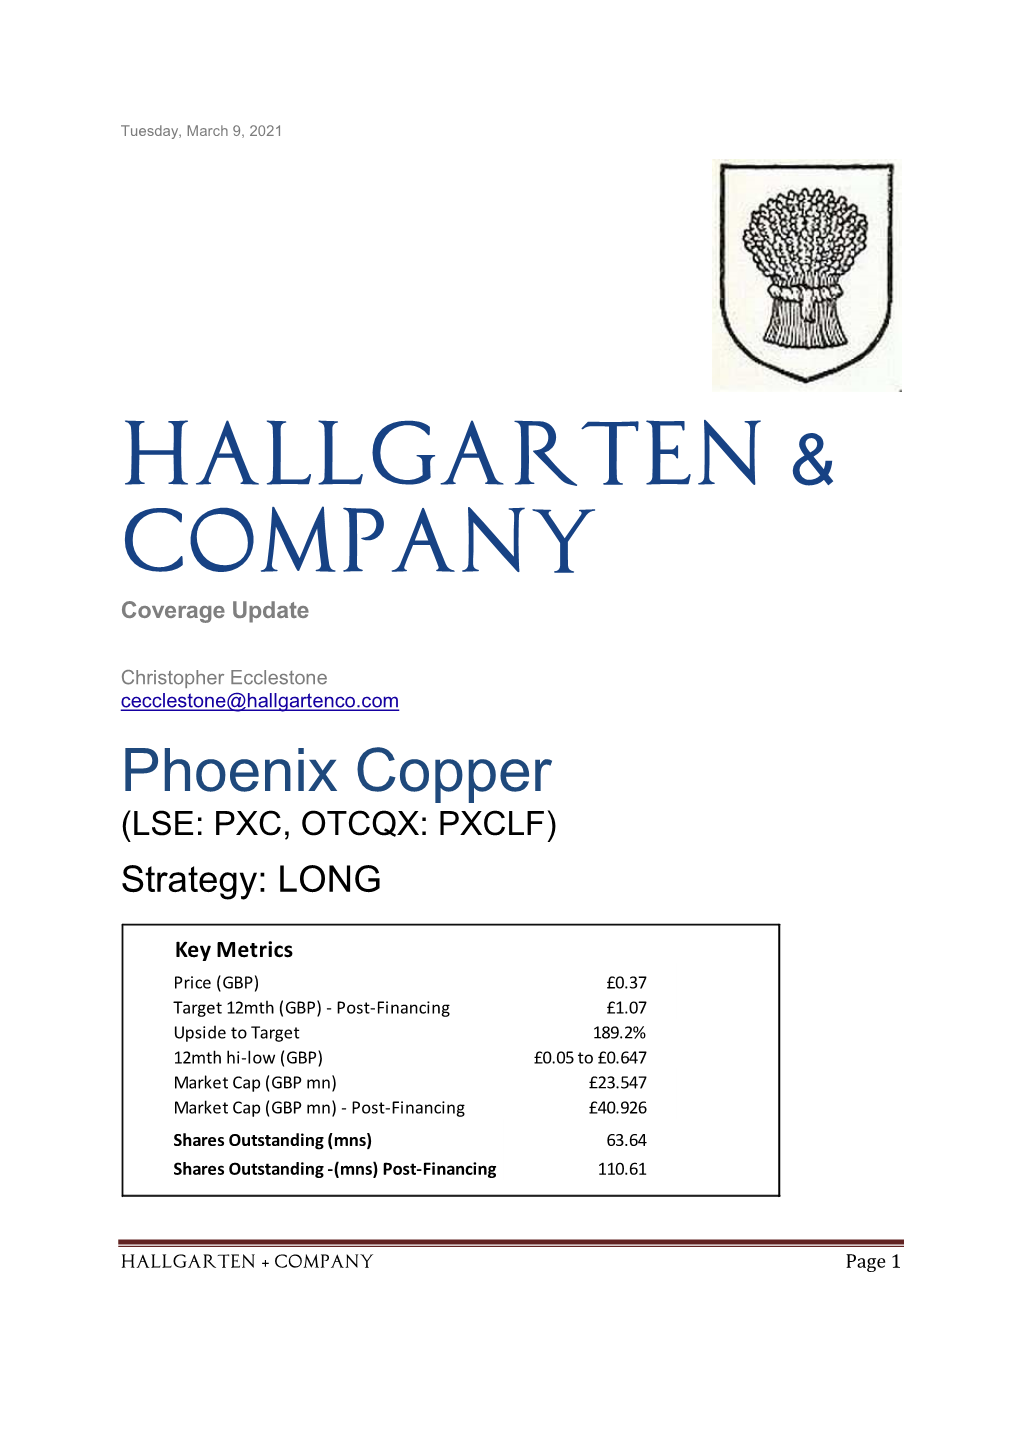 Phoenix Copper (LSE: PXC, OTCQX: PXCLF)